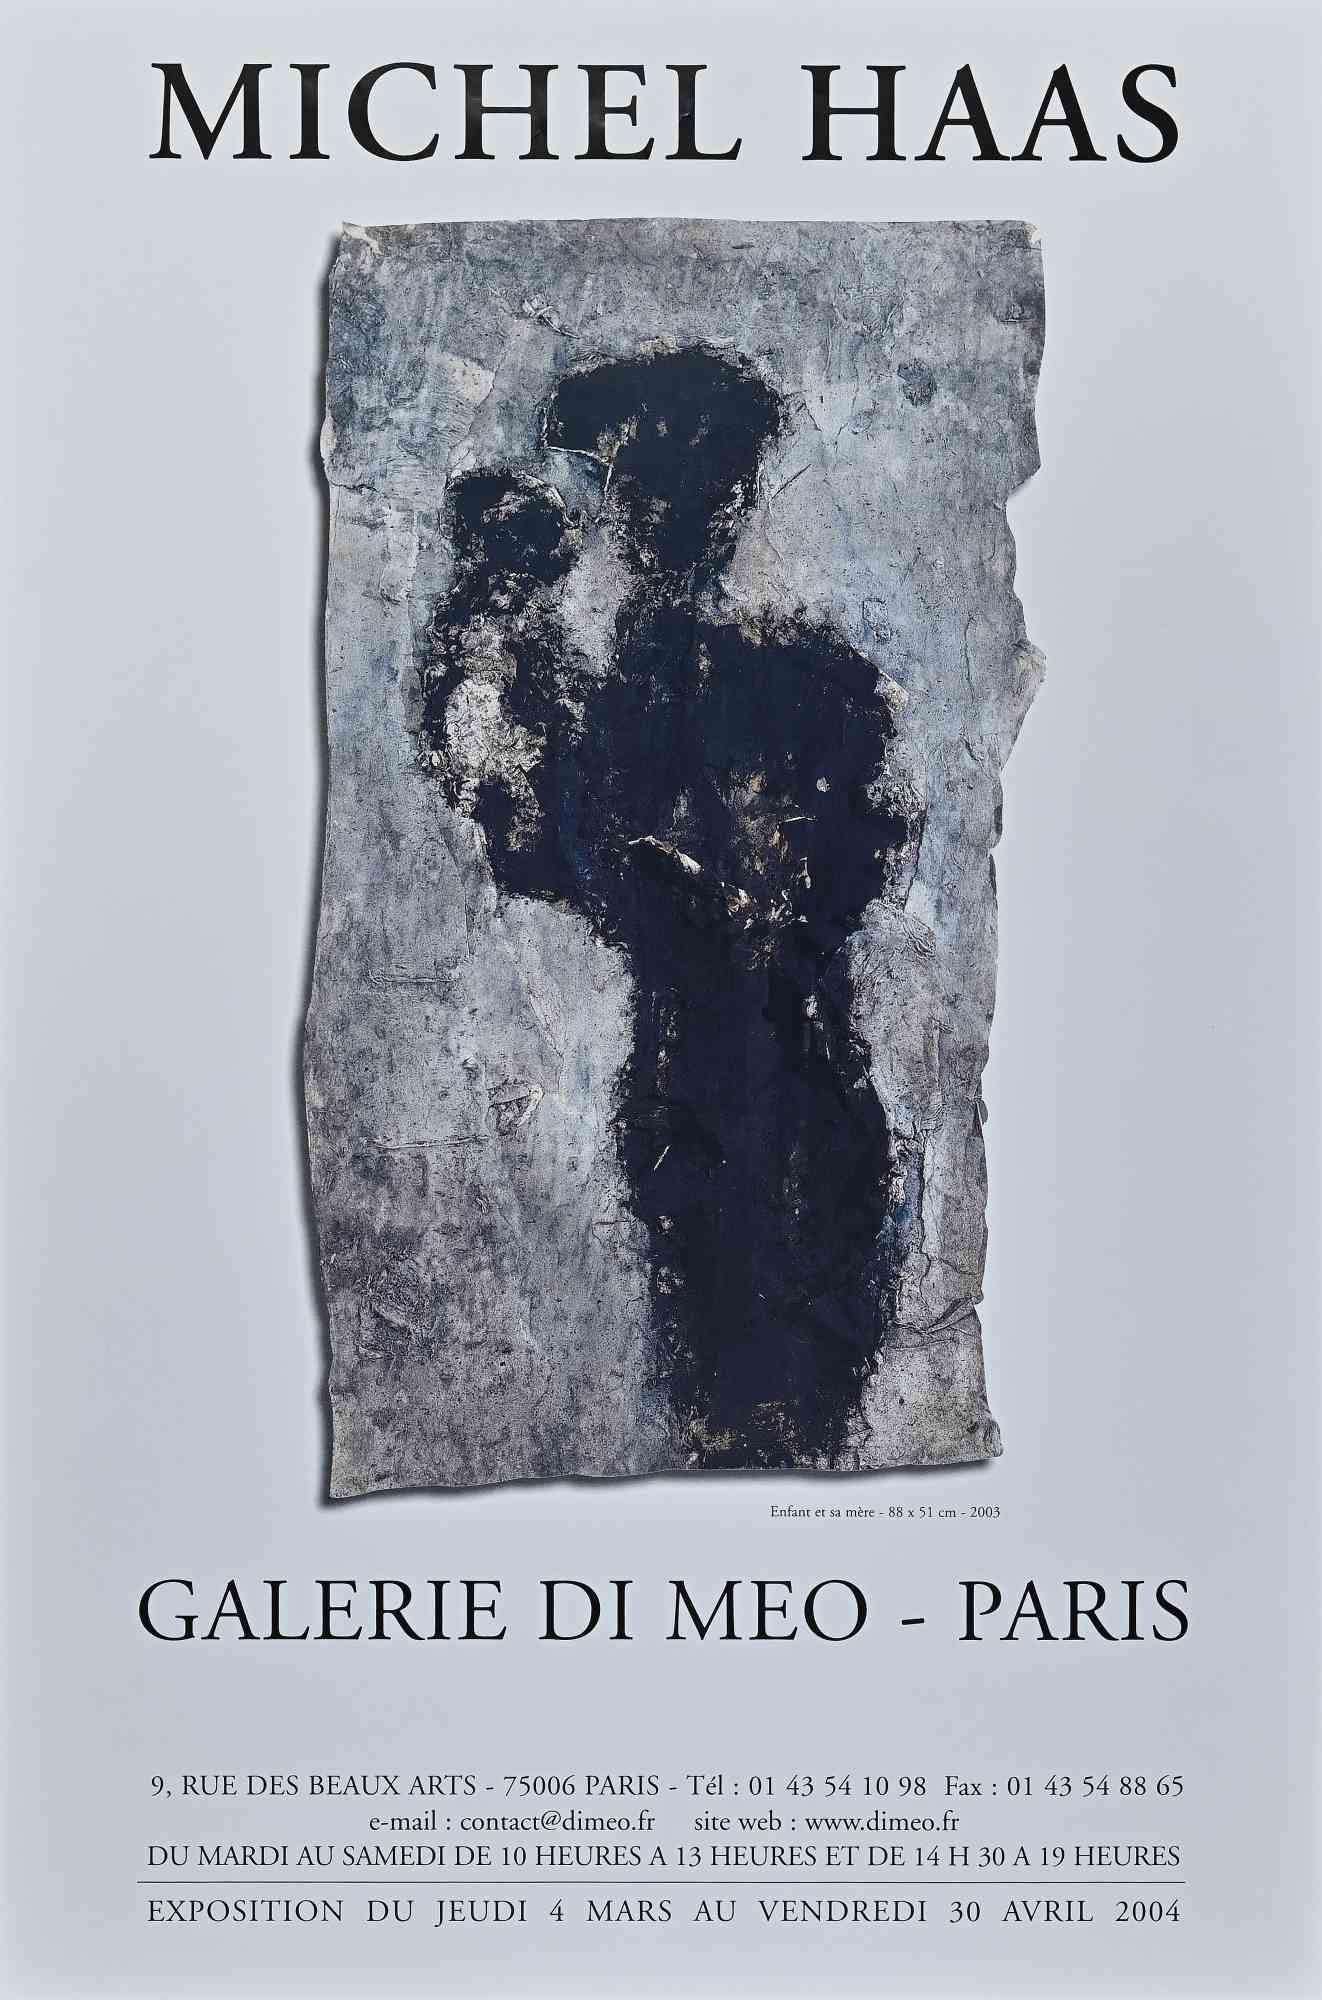 Vintage Poster ist ein Offsetdruck, der für die Ausstellung von Michel Haas in der Galerie Di Meo Paris im Jahr 2003 realisiert wurde.

Das Kunstwerk ist in einer ausgewogenen Komposition dargestellt.

Guter Zustand, keine Signatur.

Michel Haas,